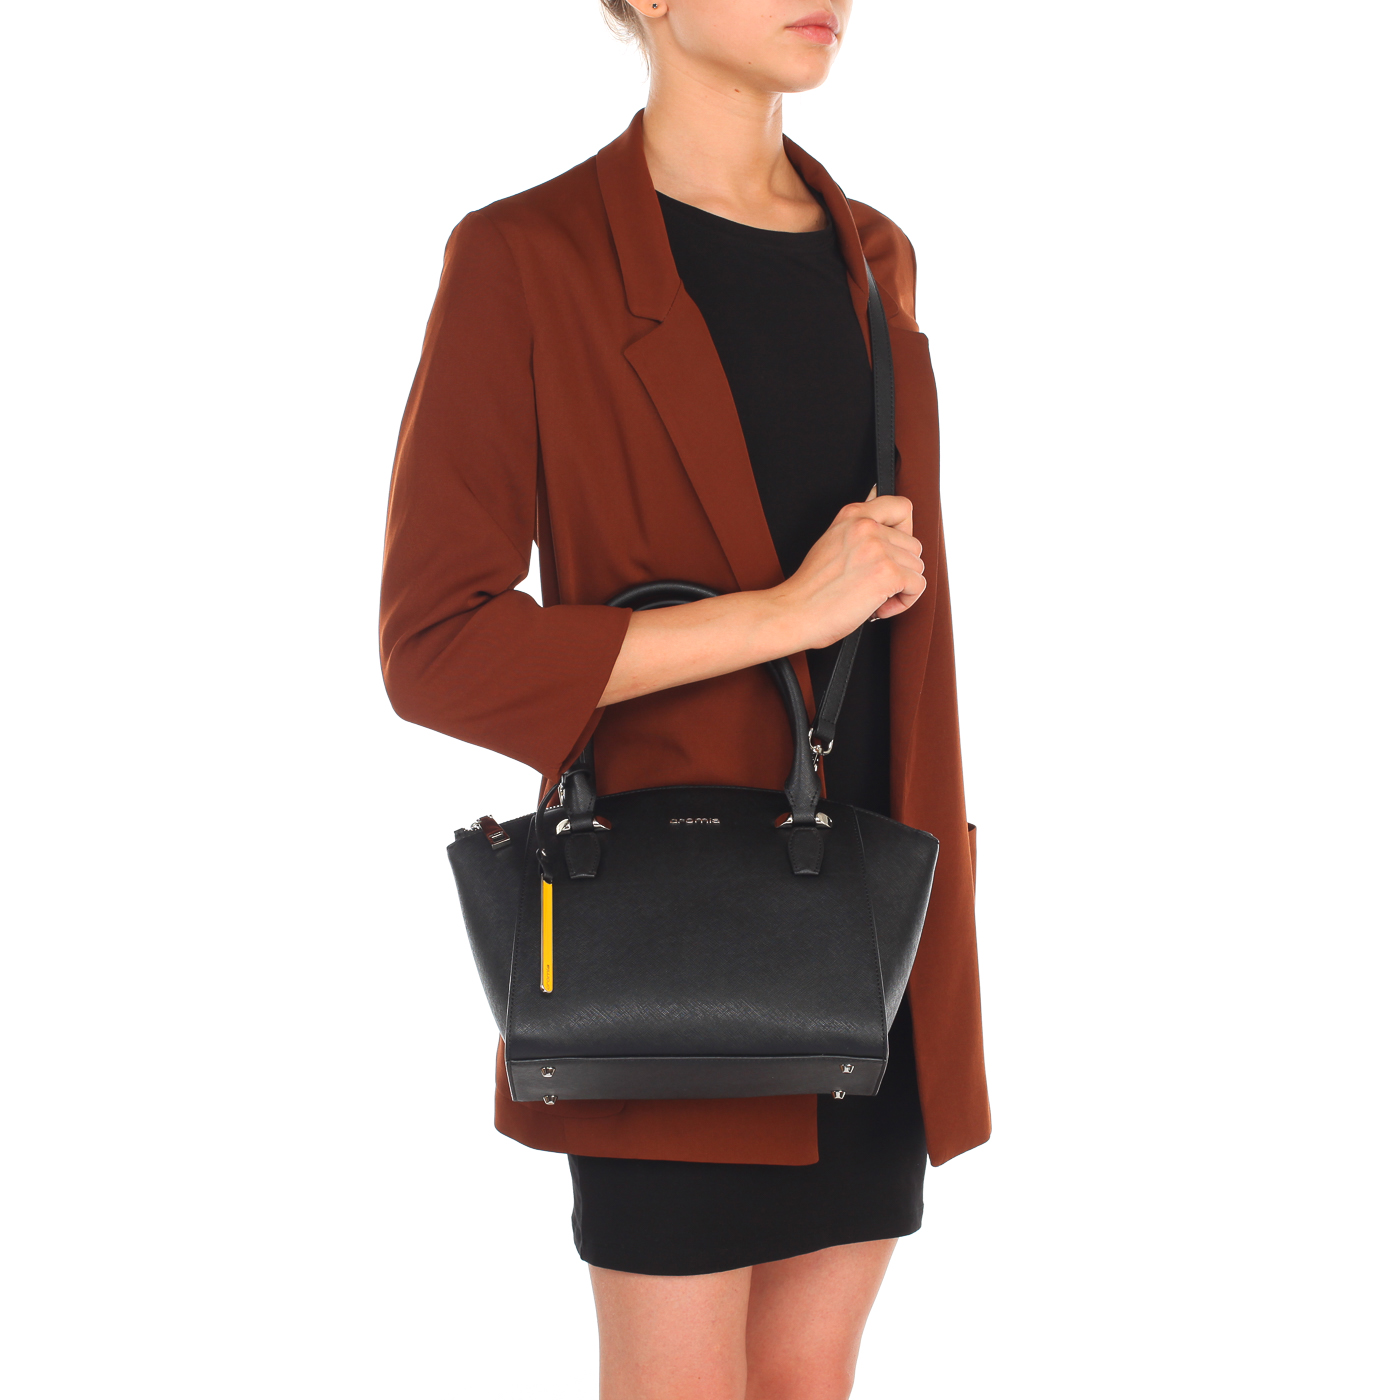 Женская сумочка из сафьяновой черной кожи с плечевым ремешком Cromia Perla